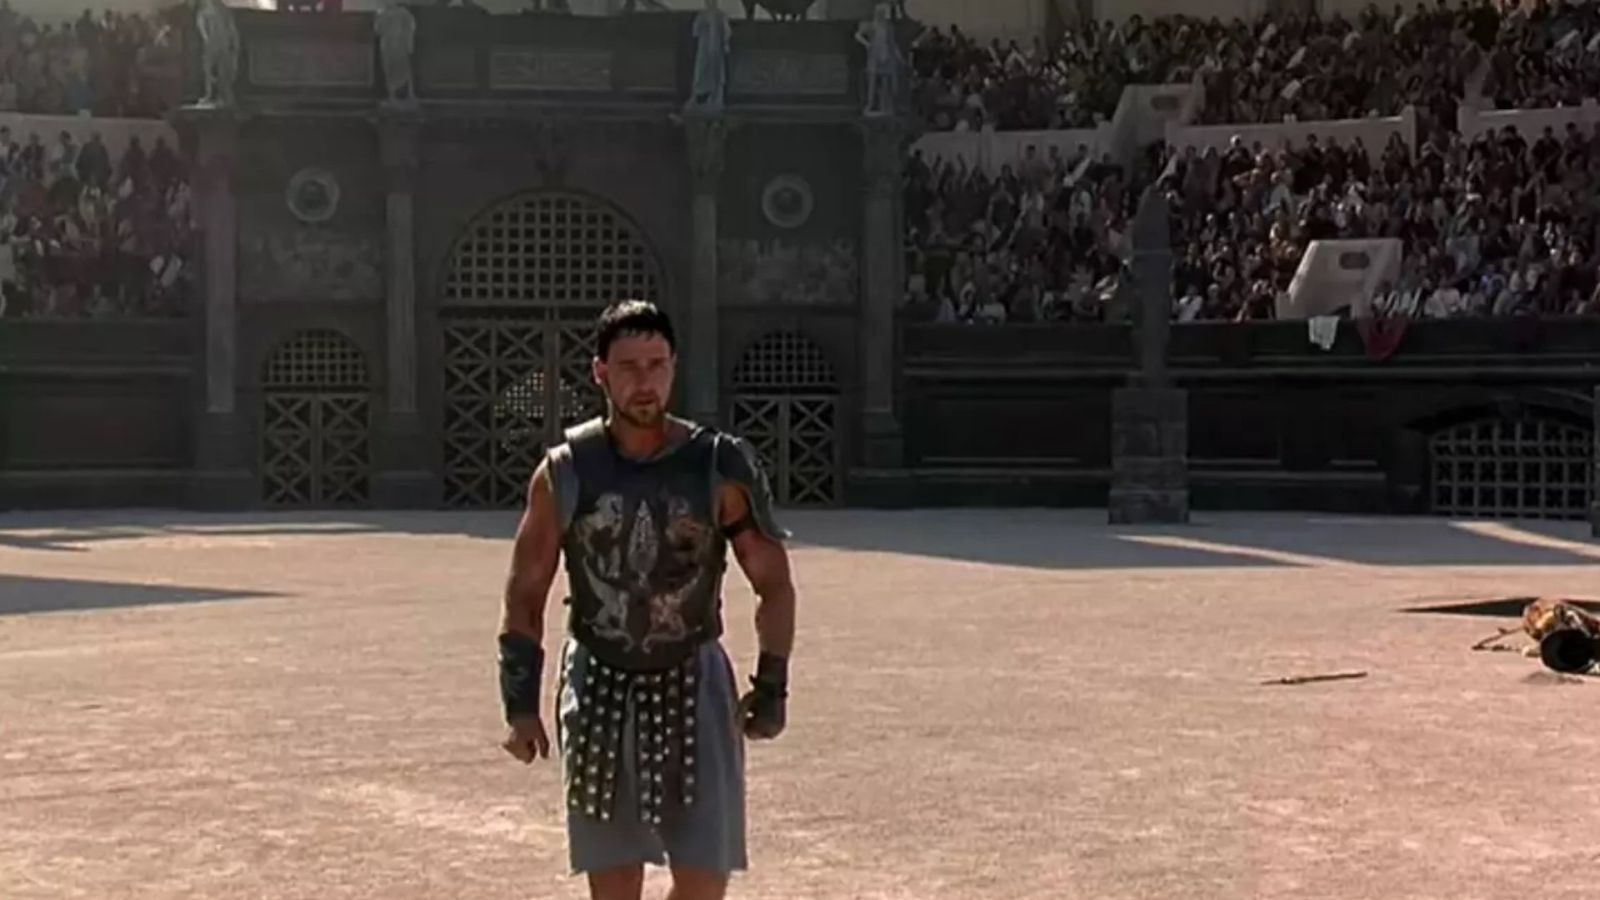 Il Gladiatore 2 costretto a interrompere le riprese durante una scena di massa al Colosseo per lo sciopero